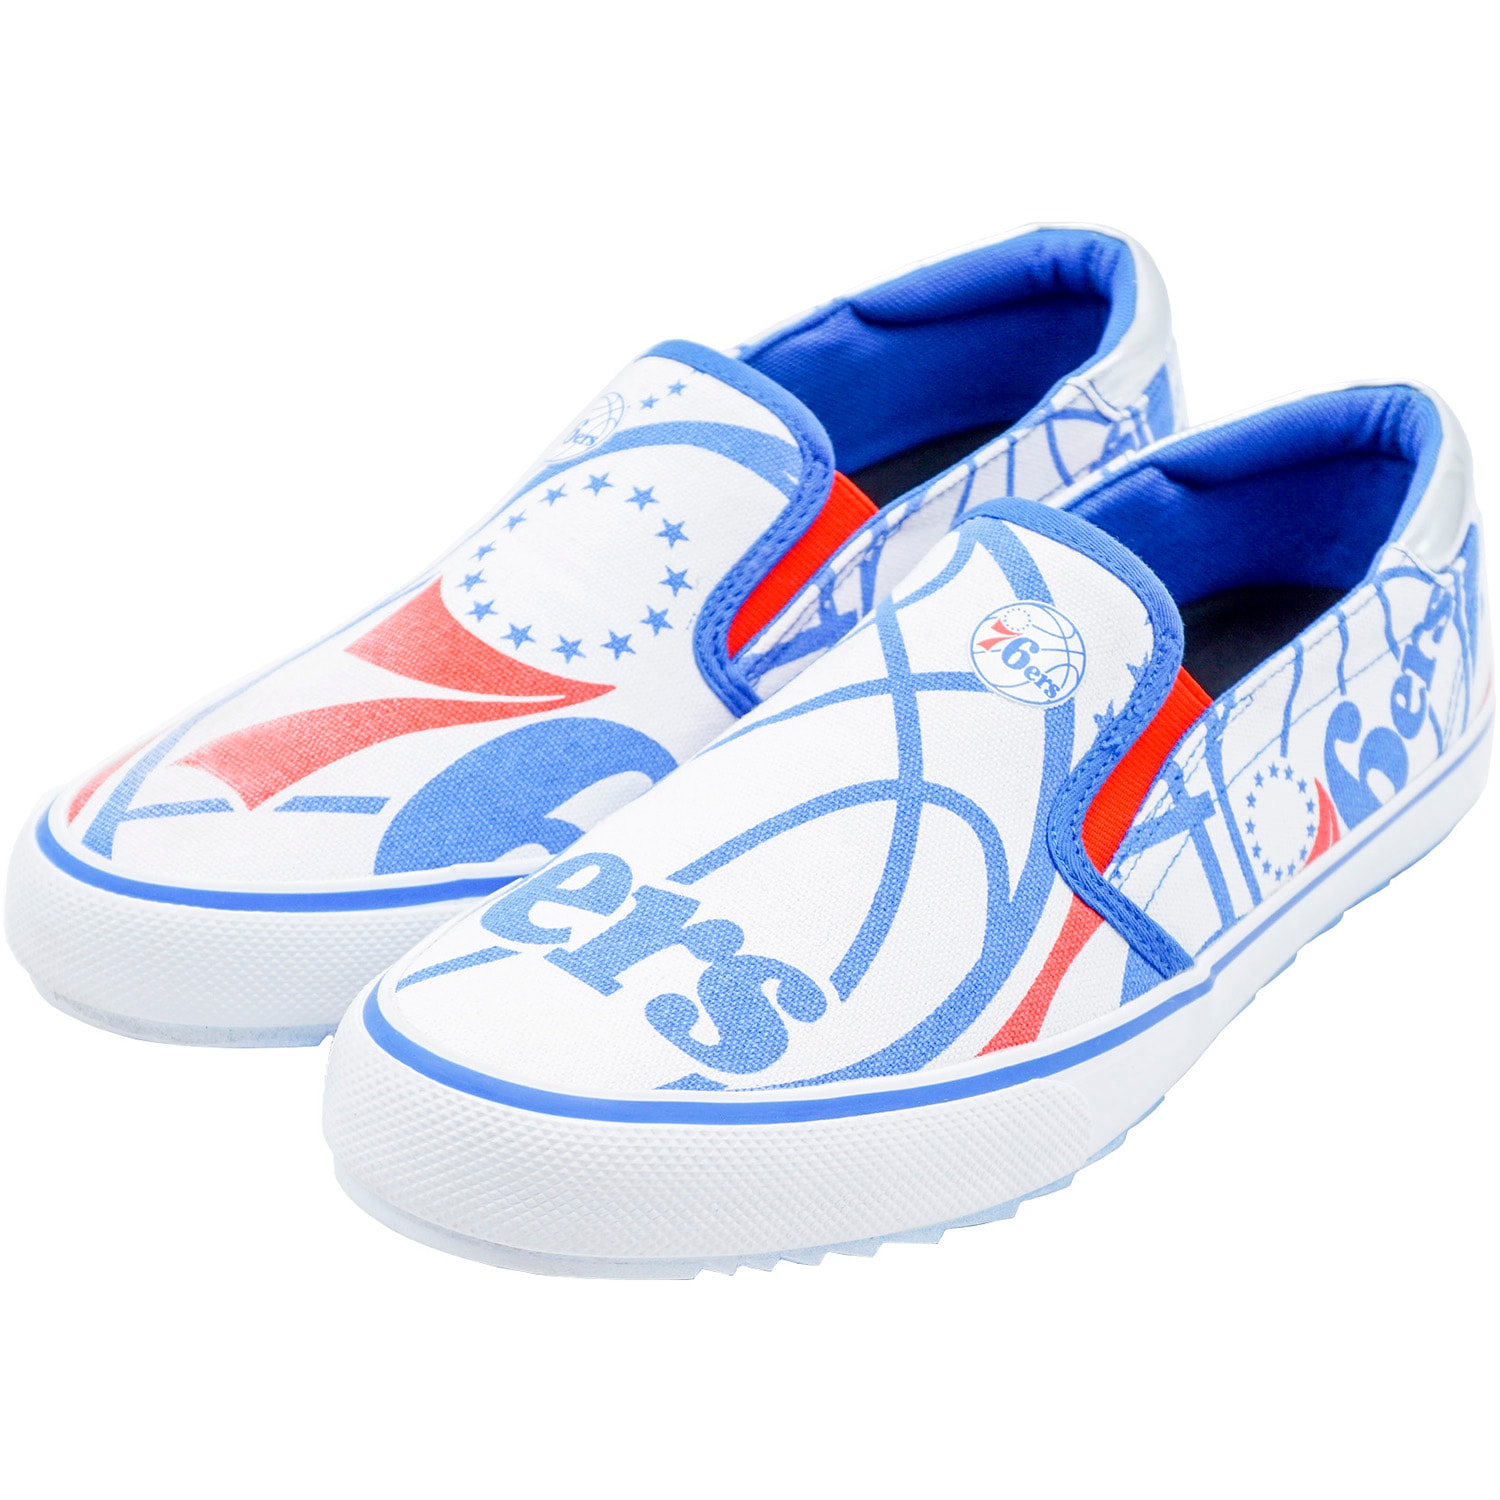 Men's White Philadelphia 76ers Slip-On Canvas Shoes - image 1 of 2